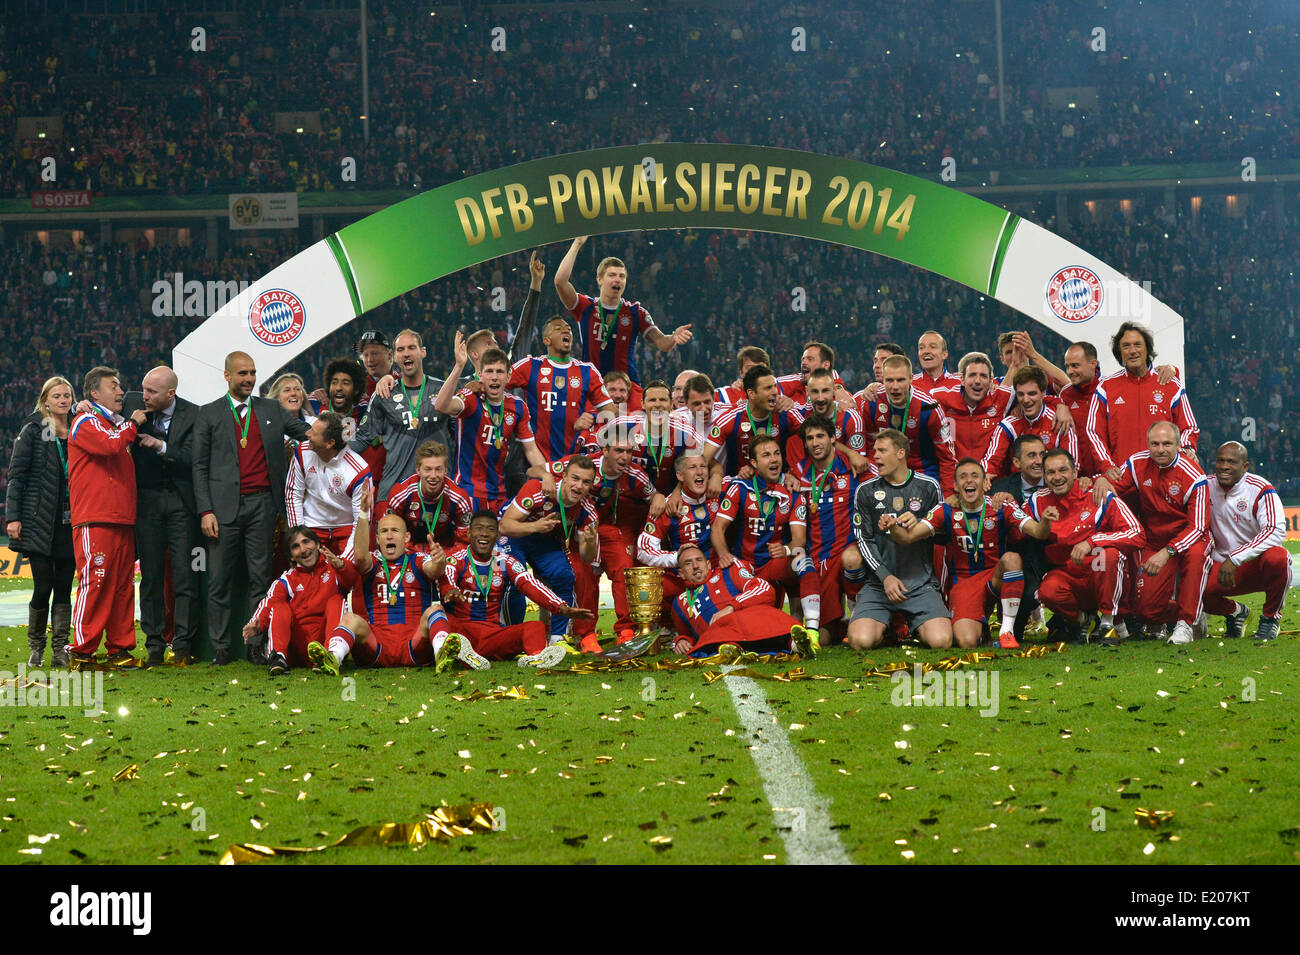 Foto de equipo, aplaudiendo después de ganar la copa, la final de la Copa DFB 2014, Olympiastadion, Berlín, Alemania Foto de stock